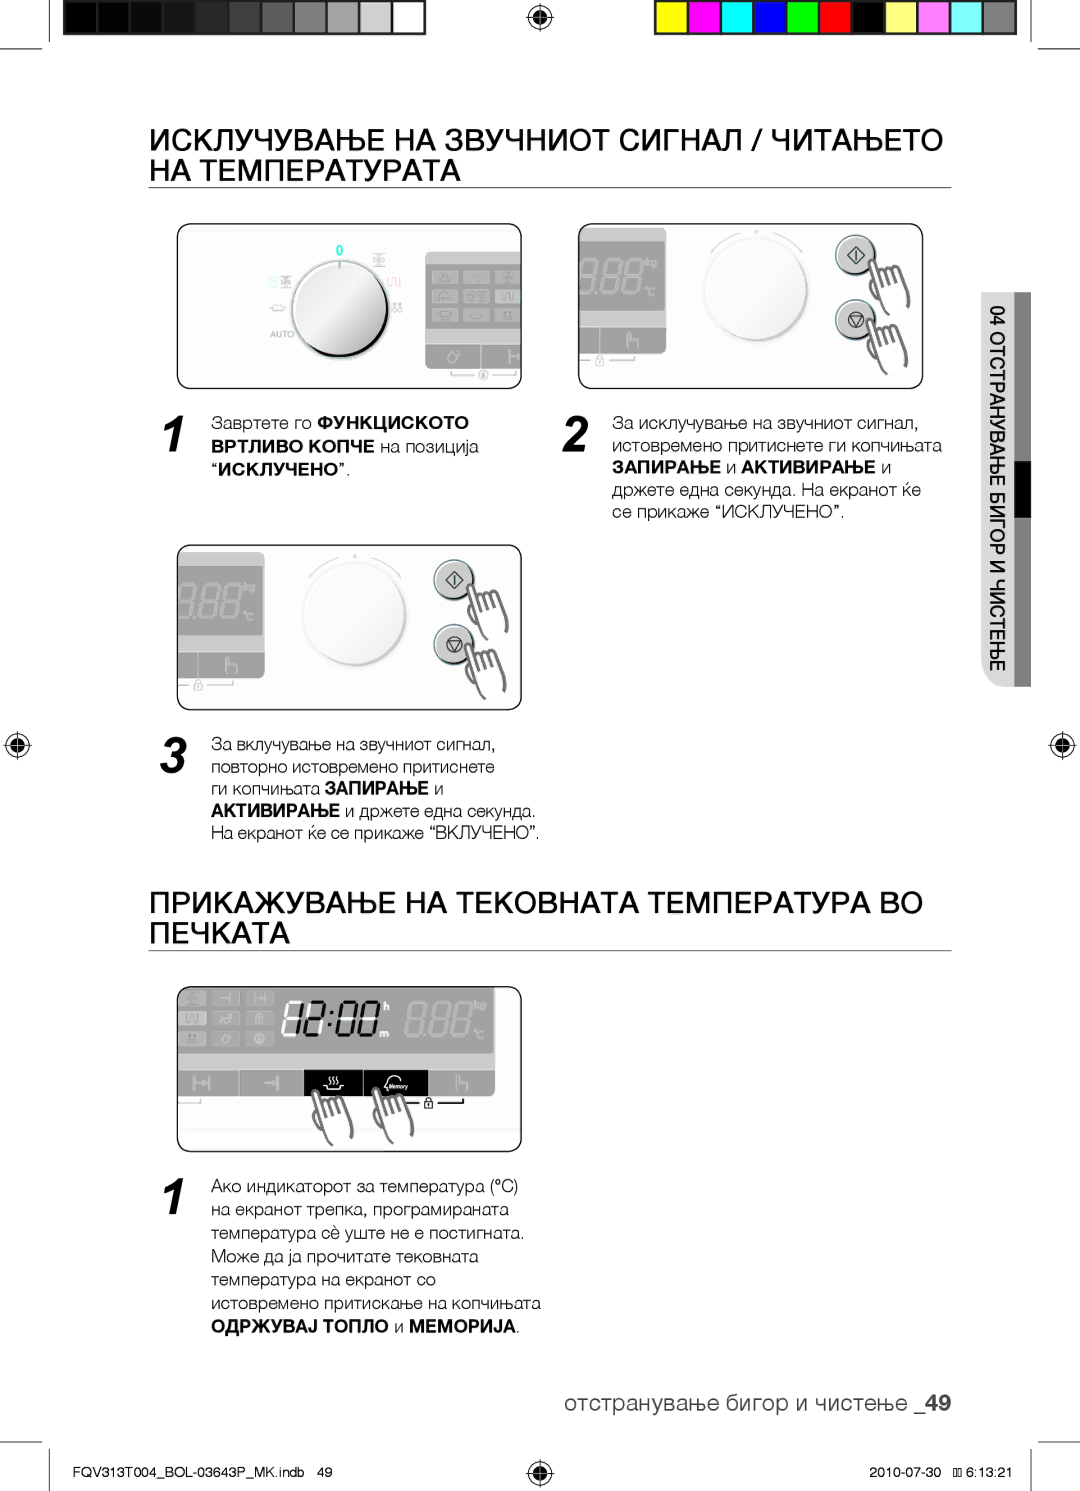 Samsung FQV313T004/BOL manual Исклучување на звучниот сигнал / читањето на температурата, Запирање и Активирање и 